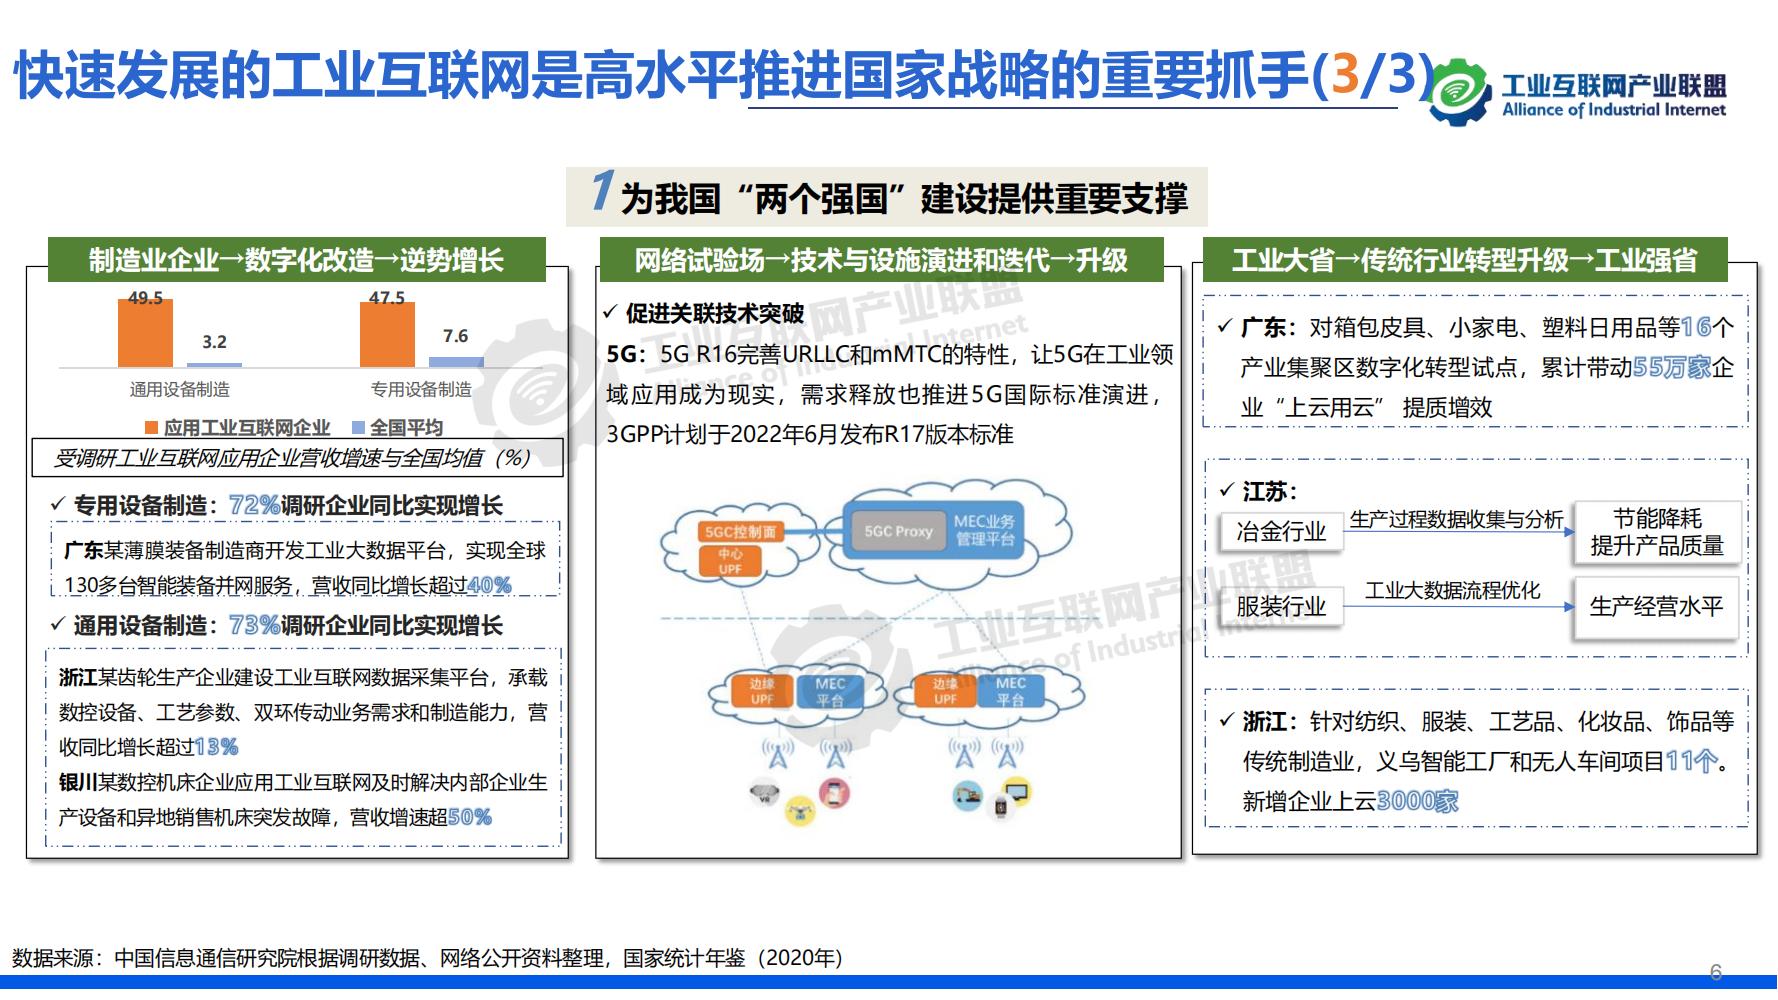 1-中国工业互联网发展成效评估报告-水印_09.jpg